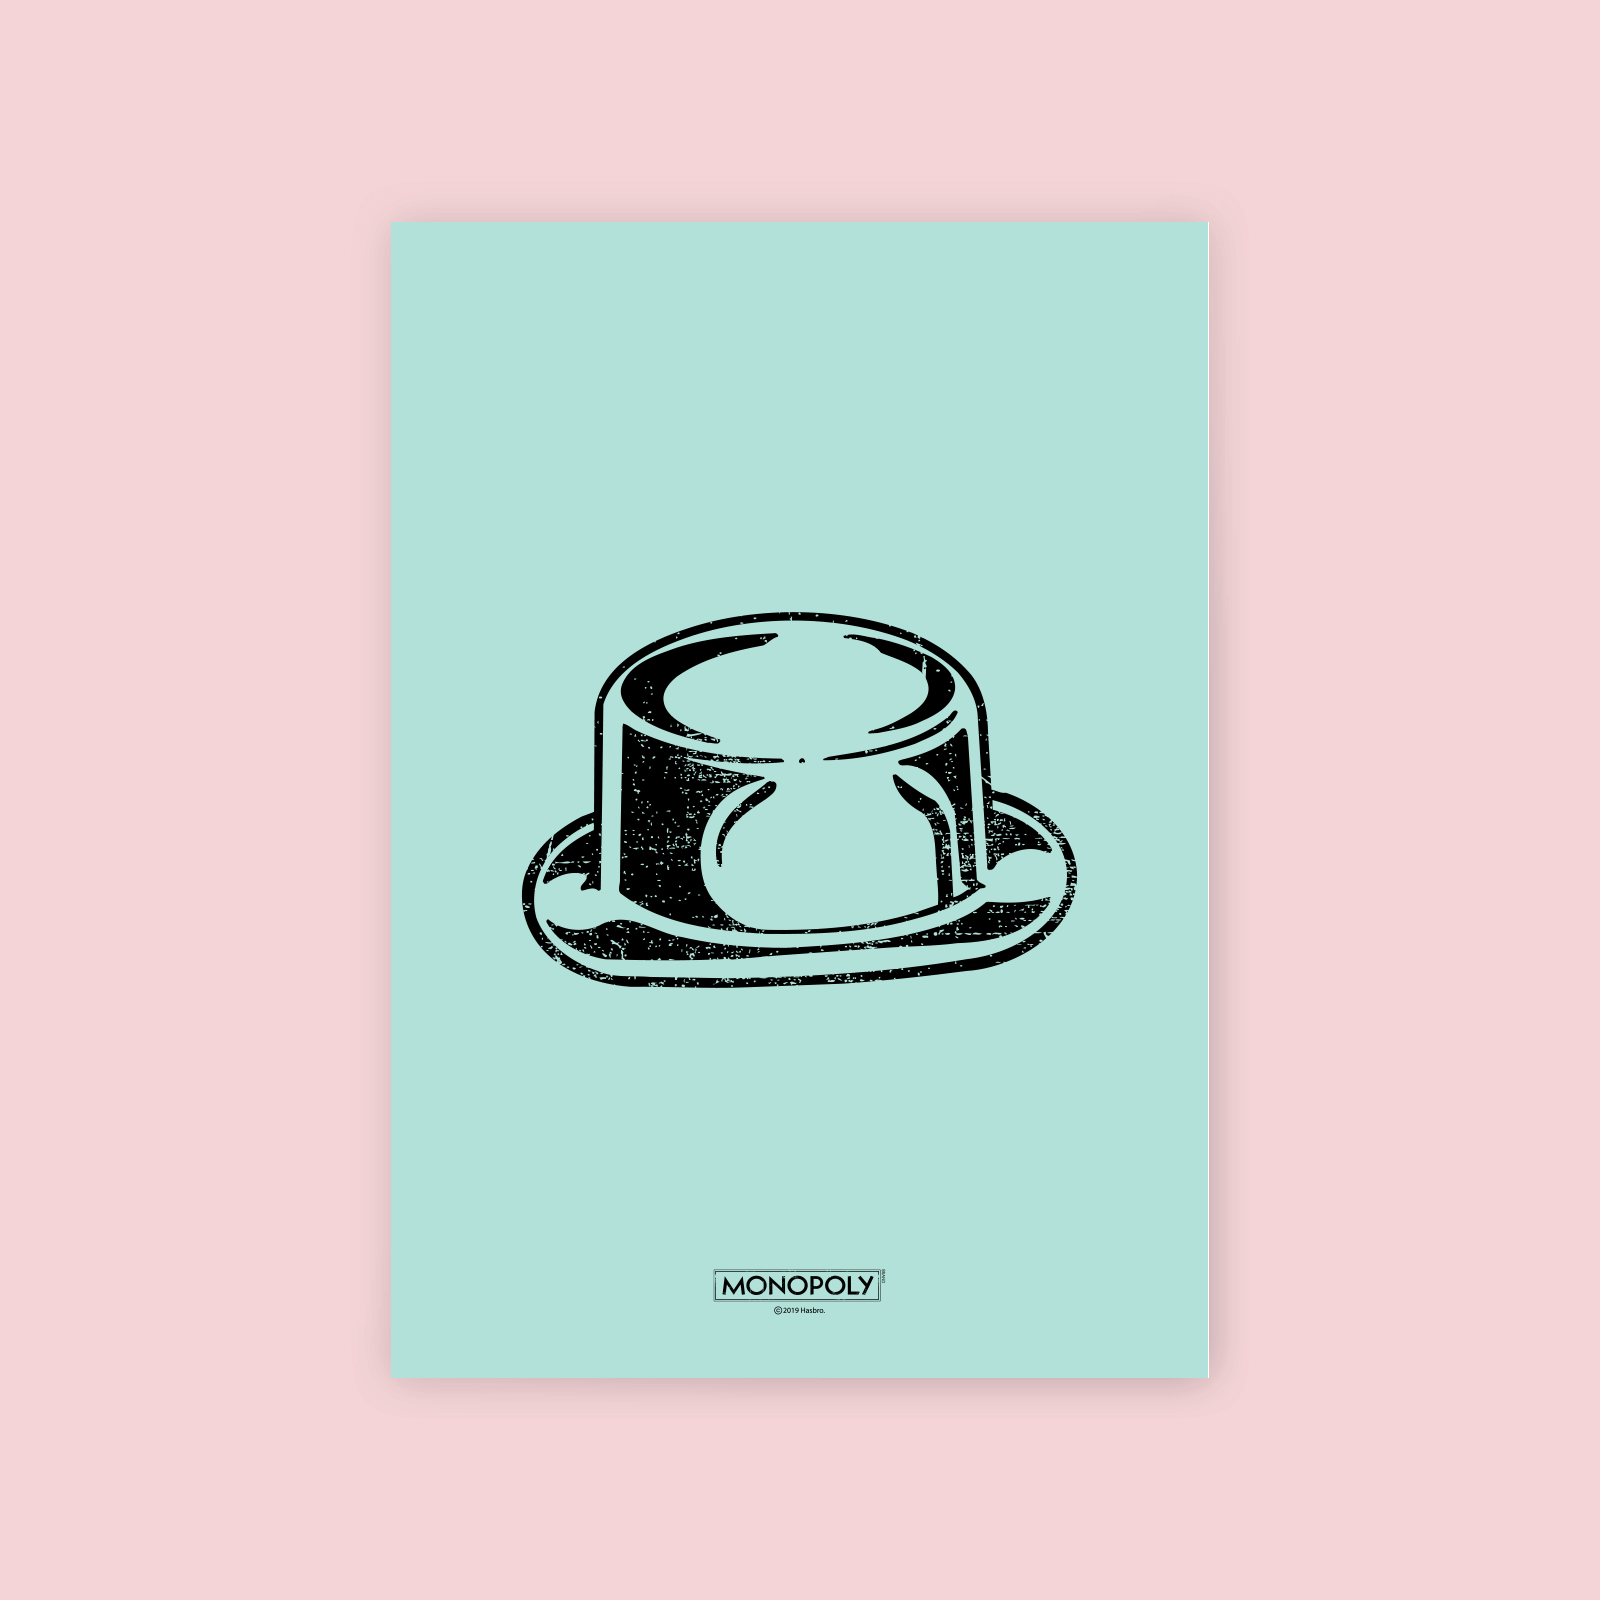 Monopoly Hat Letterpress Art Print - A4